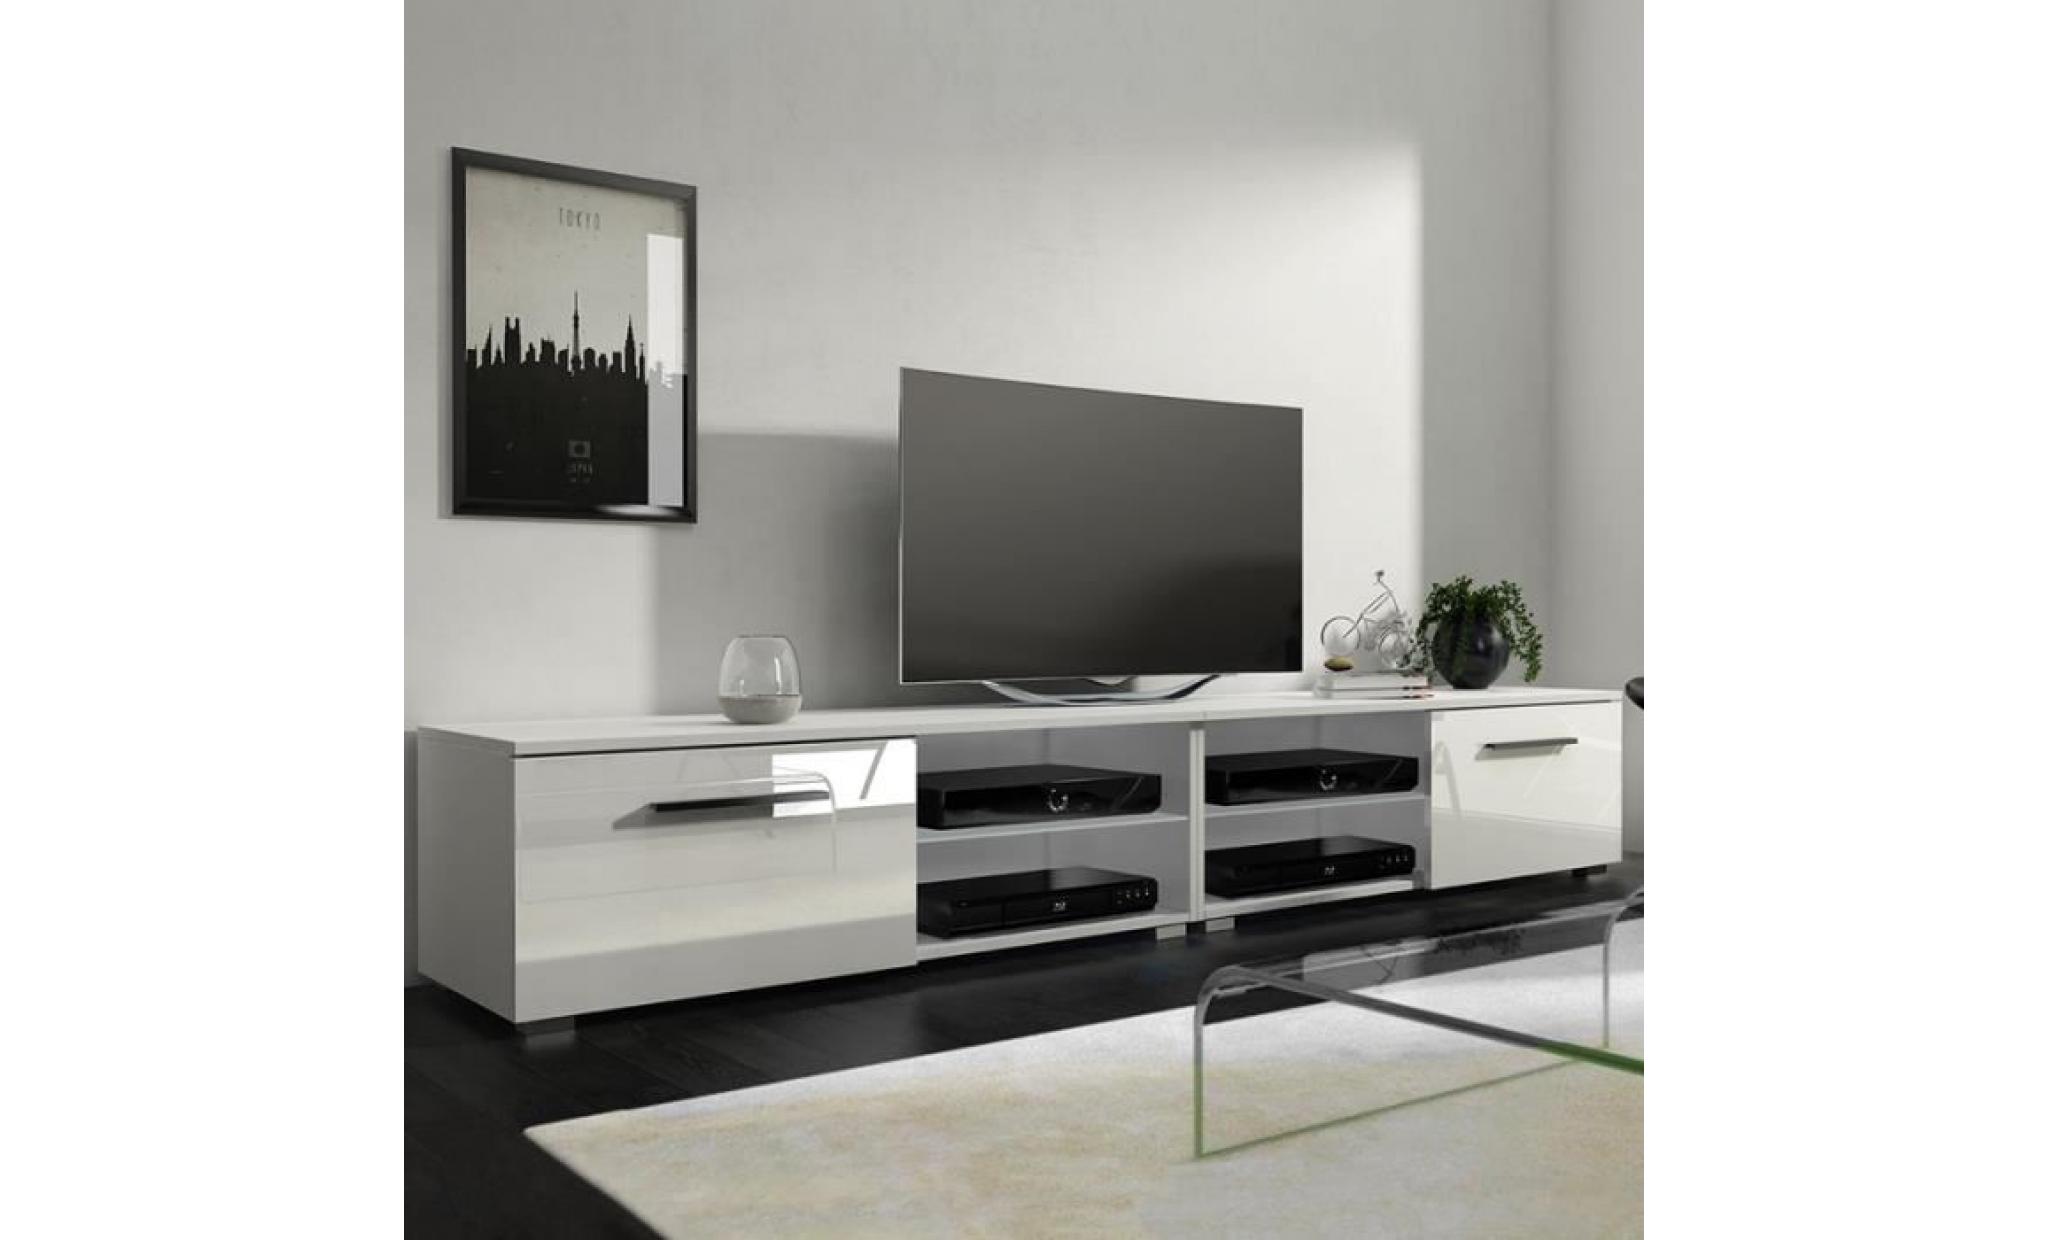 meuble tv / meuble salon   tenus double   2x100 cm   blanc mat / blanc brillant   sans led   style classique